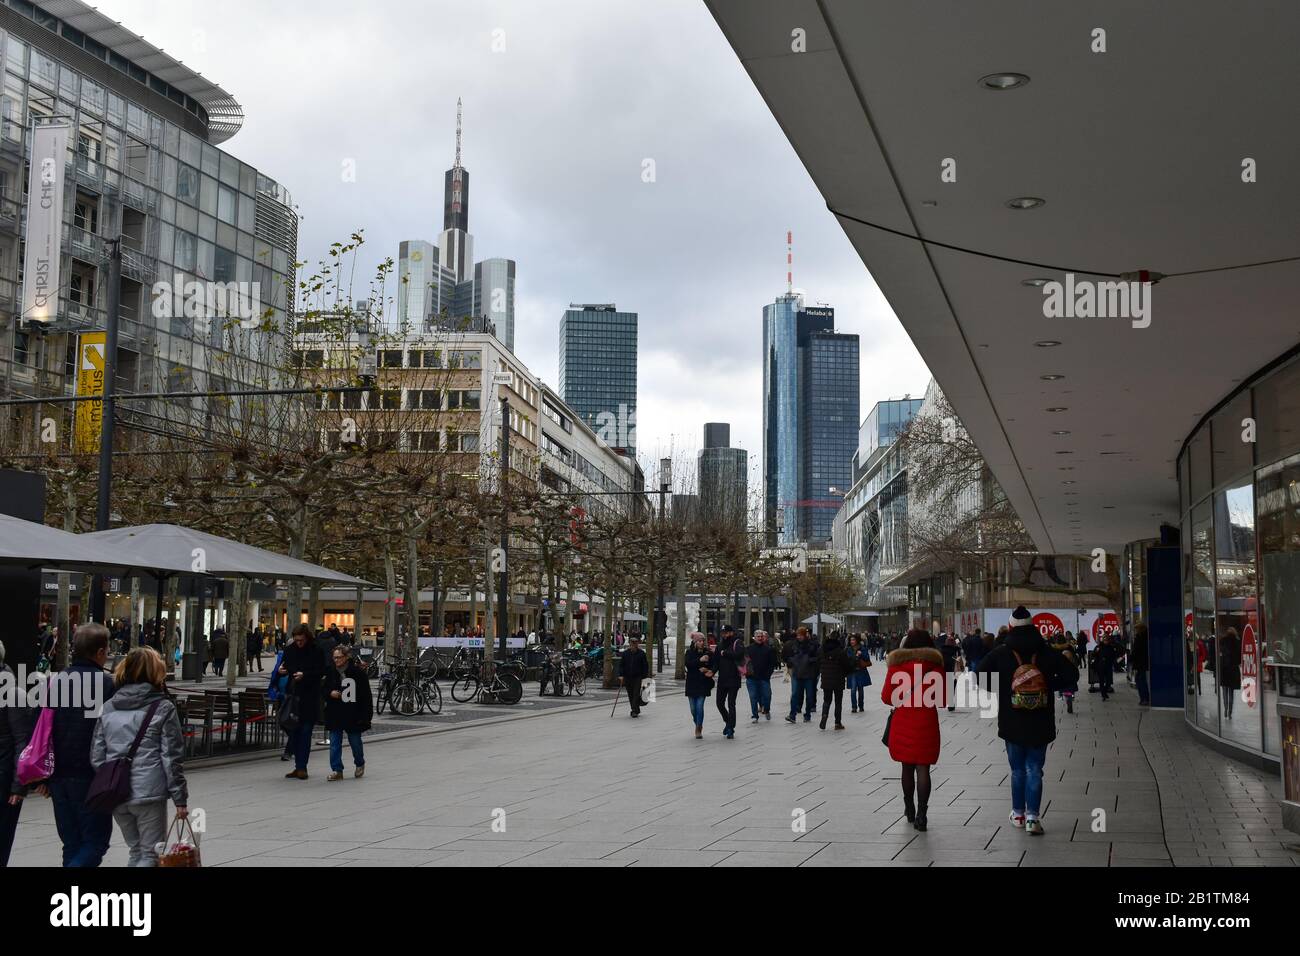 Frankfurt, Alemania - 18 de enero de 2020: Calle comercial abarrotada en Frankfurt. Foto de stock